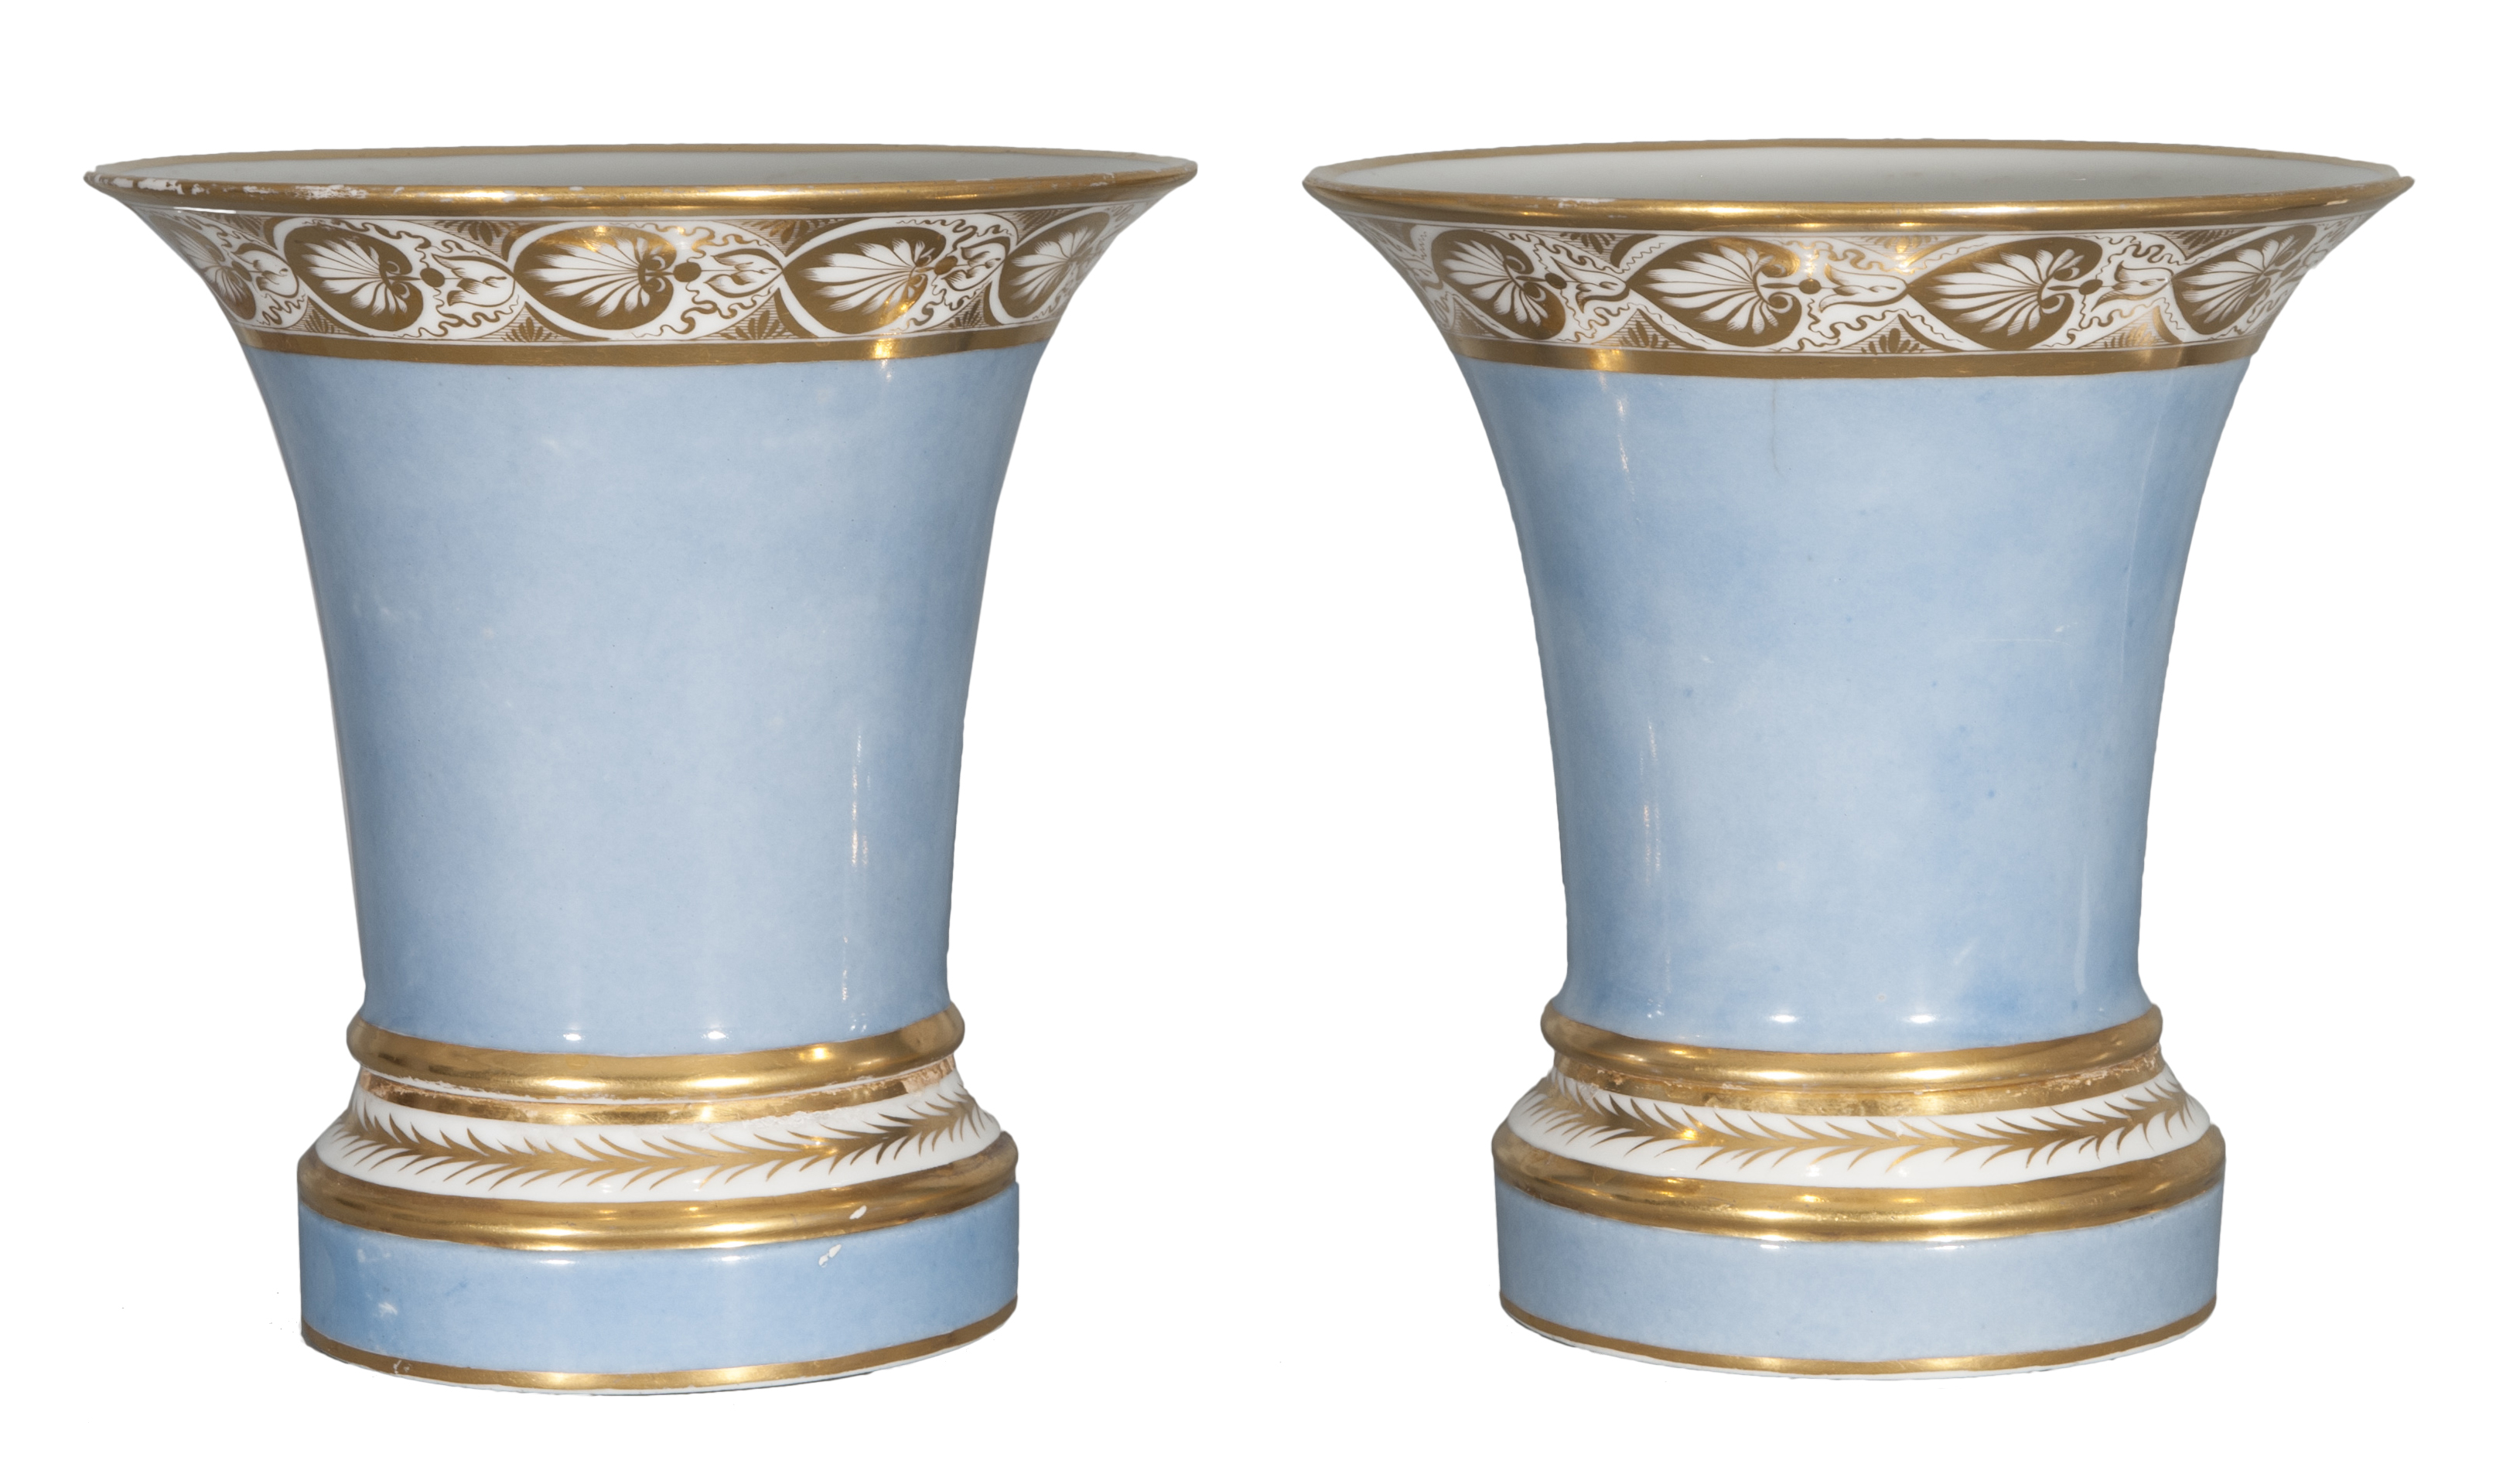 A pair of elegant Empire trumpet vases